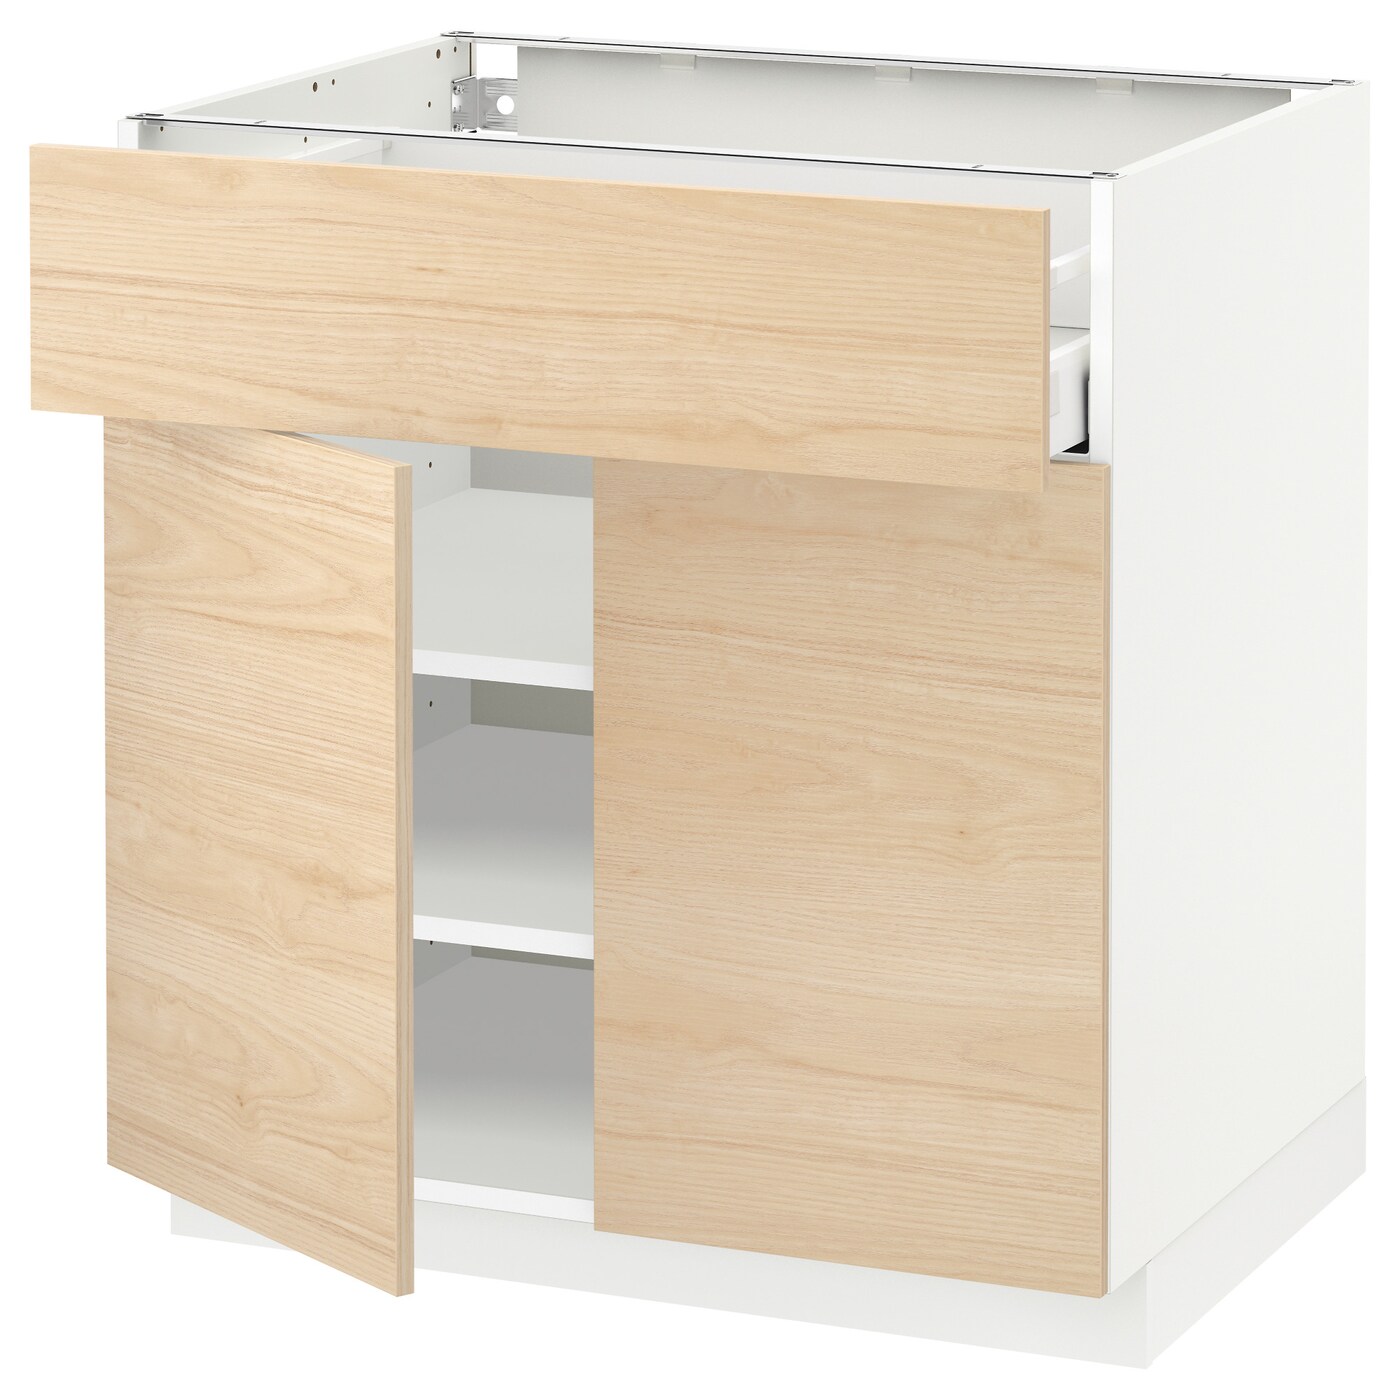 Напольный кухонный шкаф  - IKEA METOD MAXIMERA, 88x61,6x80см, белый/светло-коричневый, МЕТОД МАКСИМЕРА ИКЕА